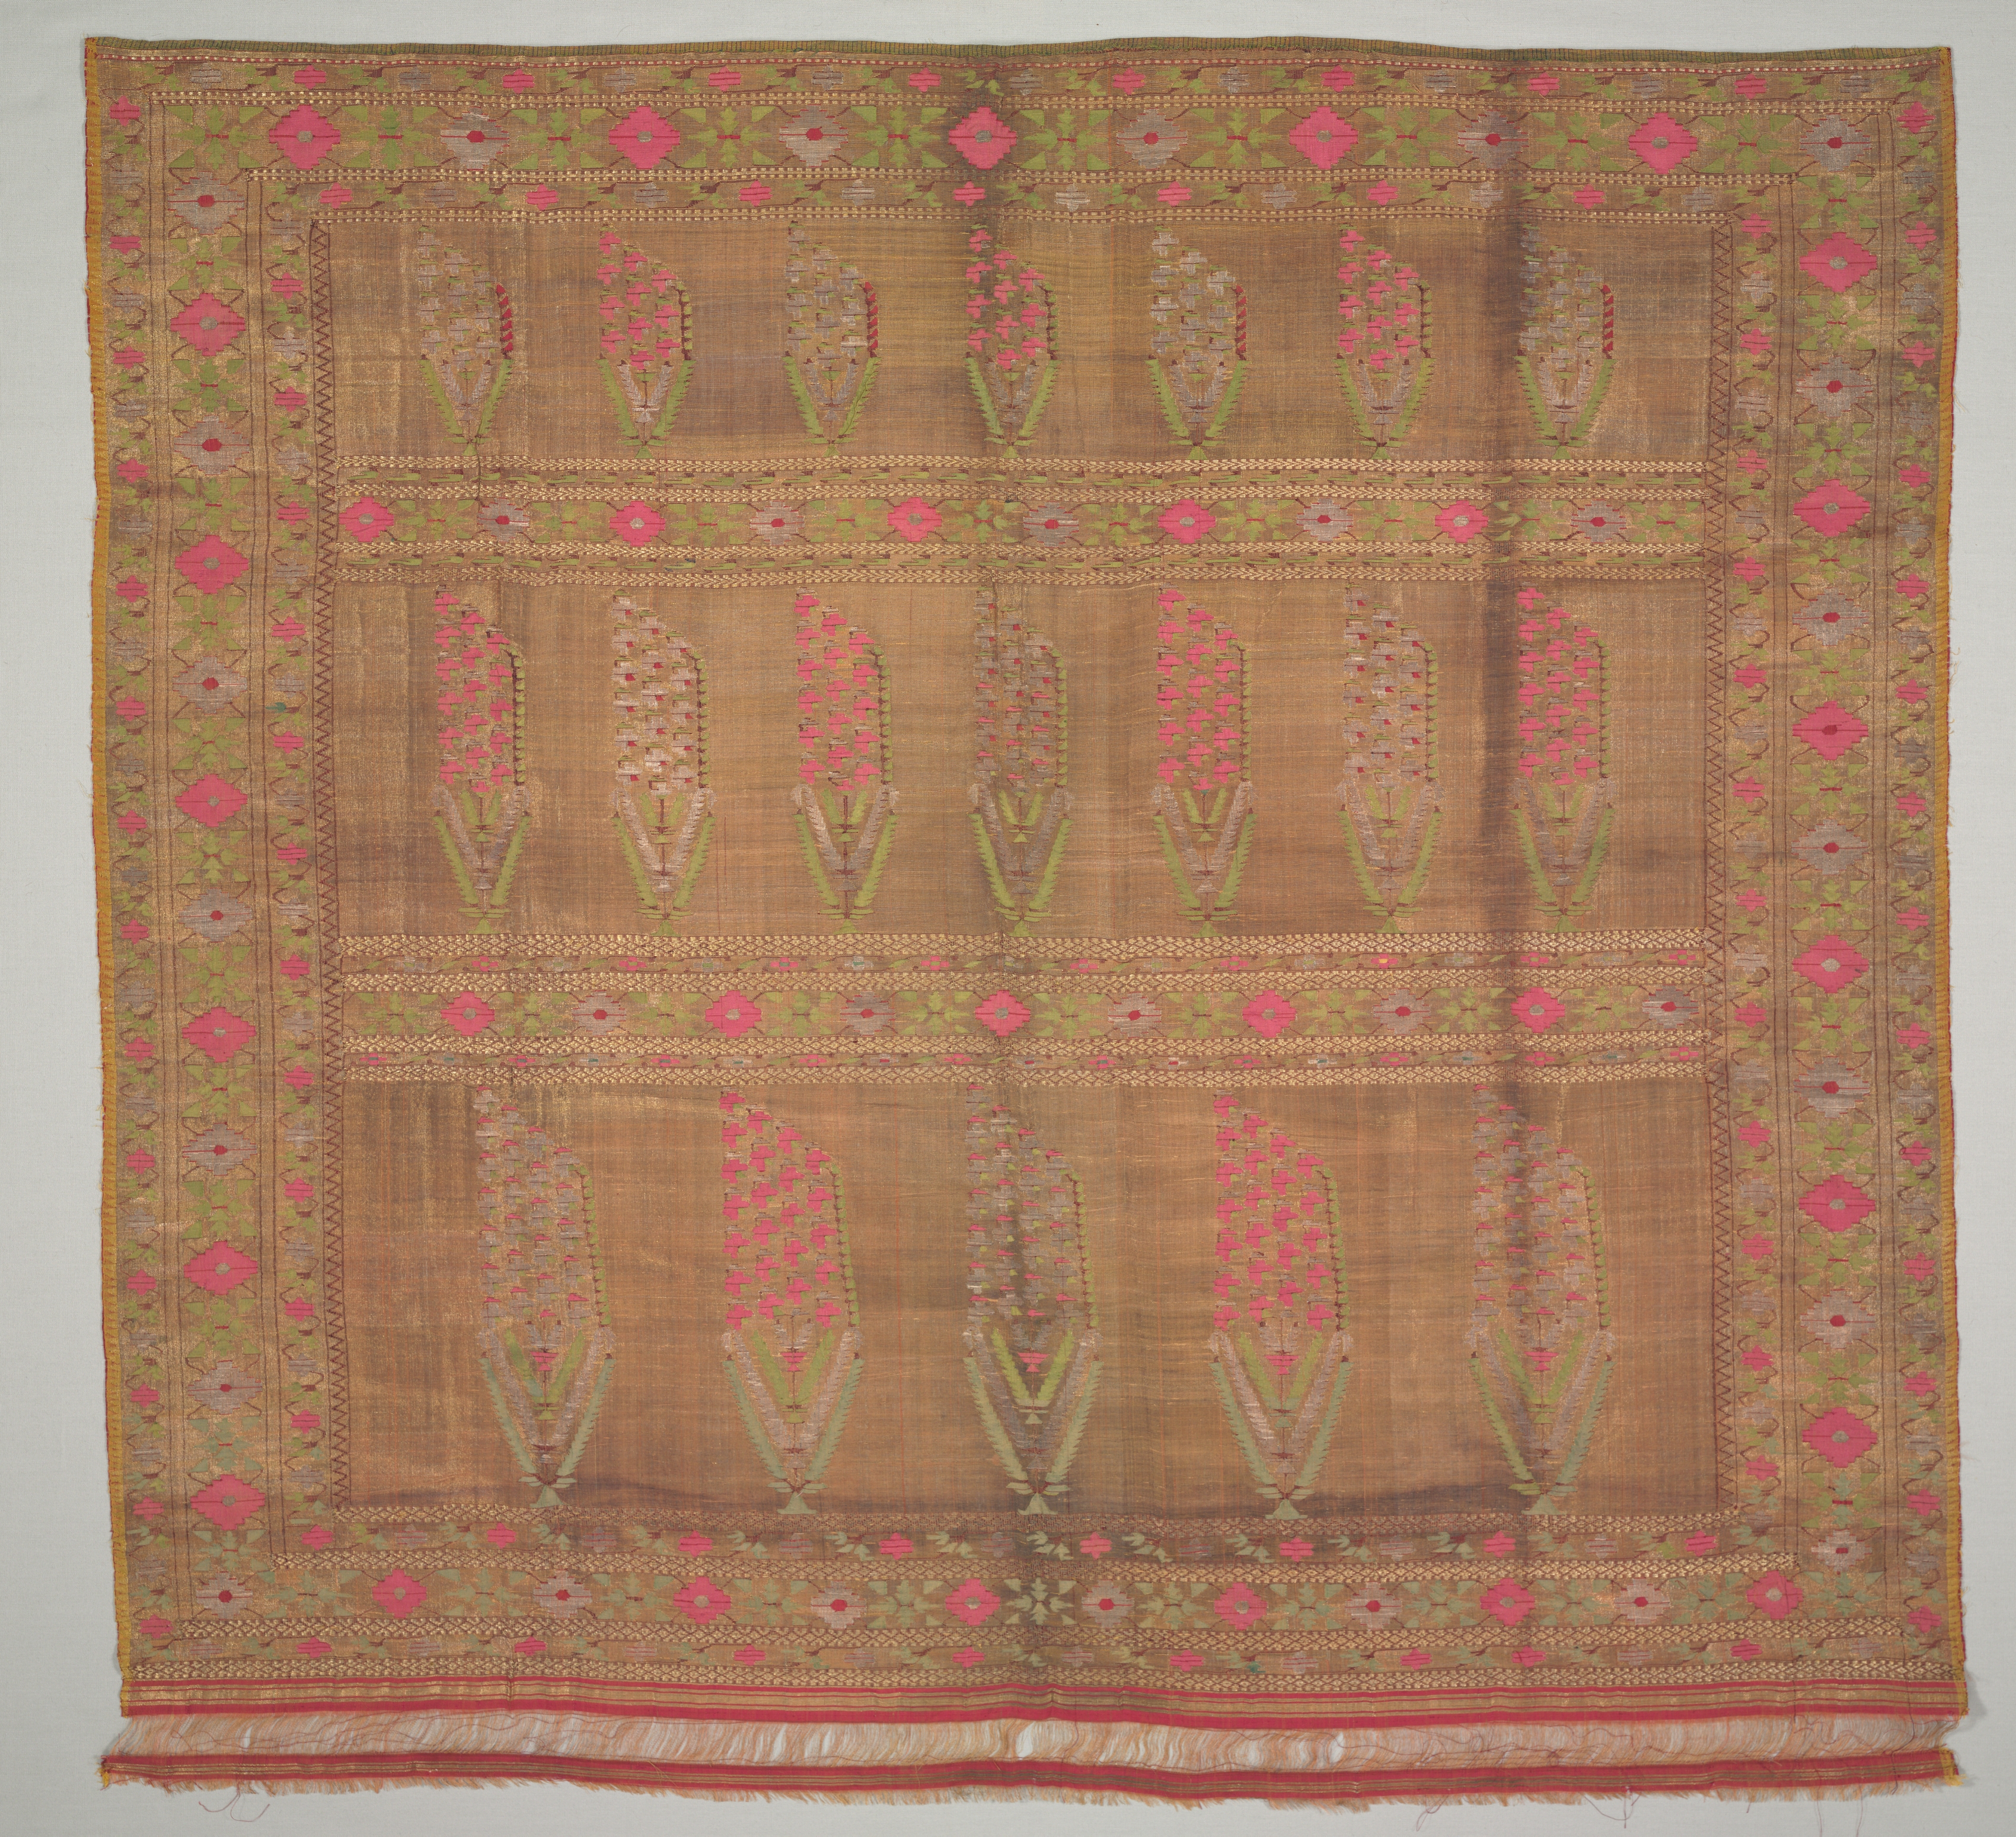 Fragment of a Sari